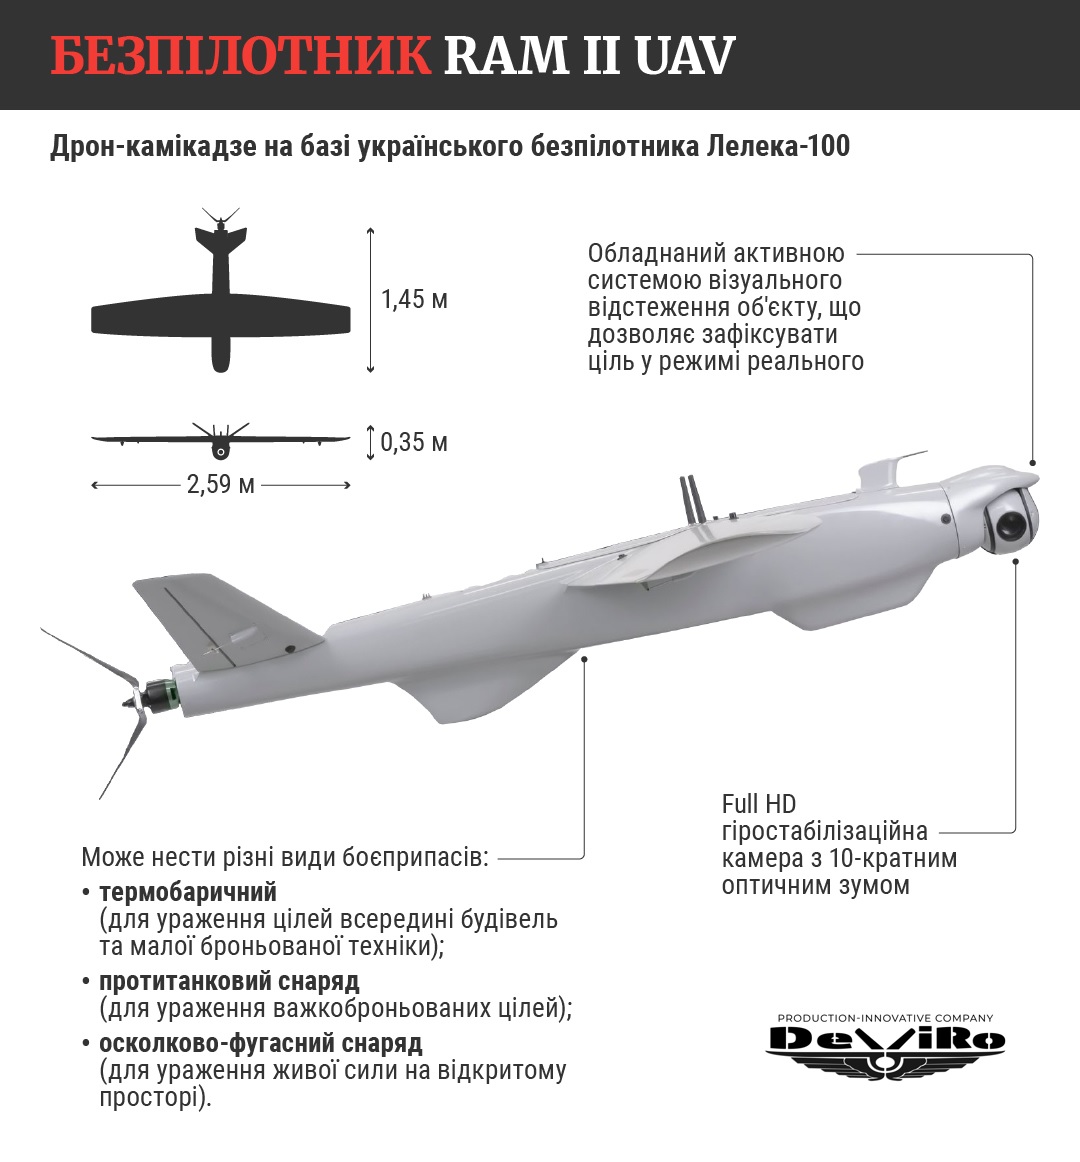 RAM II UAV